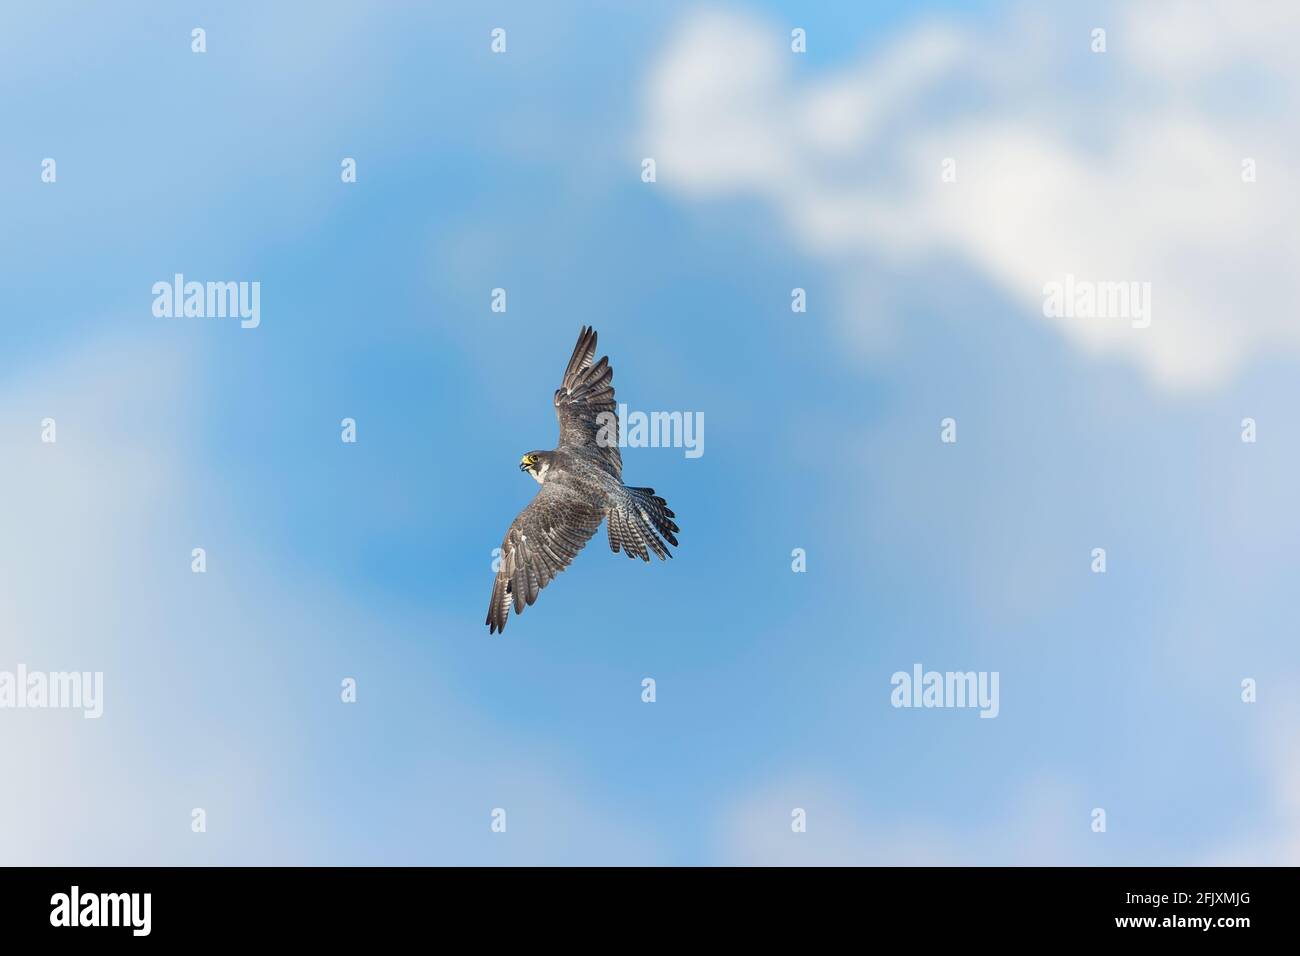 Adulto Peregrine Falcon Vista sul lato superiore del falco volante come sta girando e guardando direttamente in una macchina fotografica New Jersey, Stati Uniti d'America Foto Stock